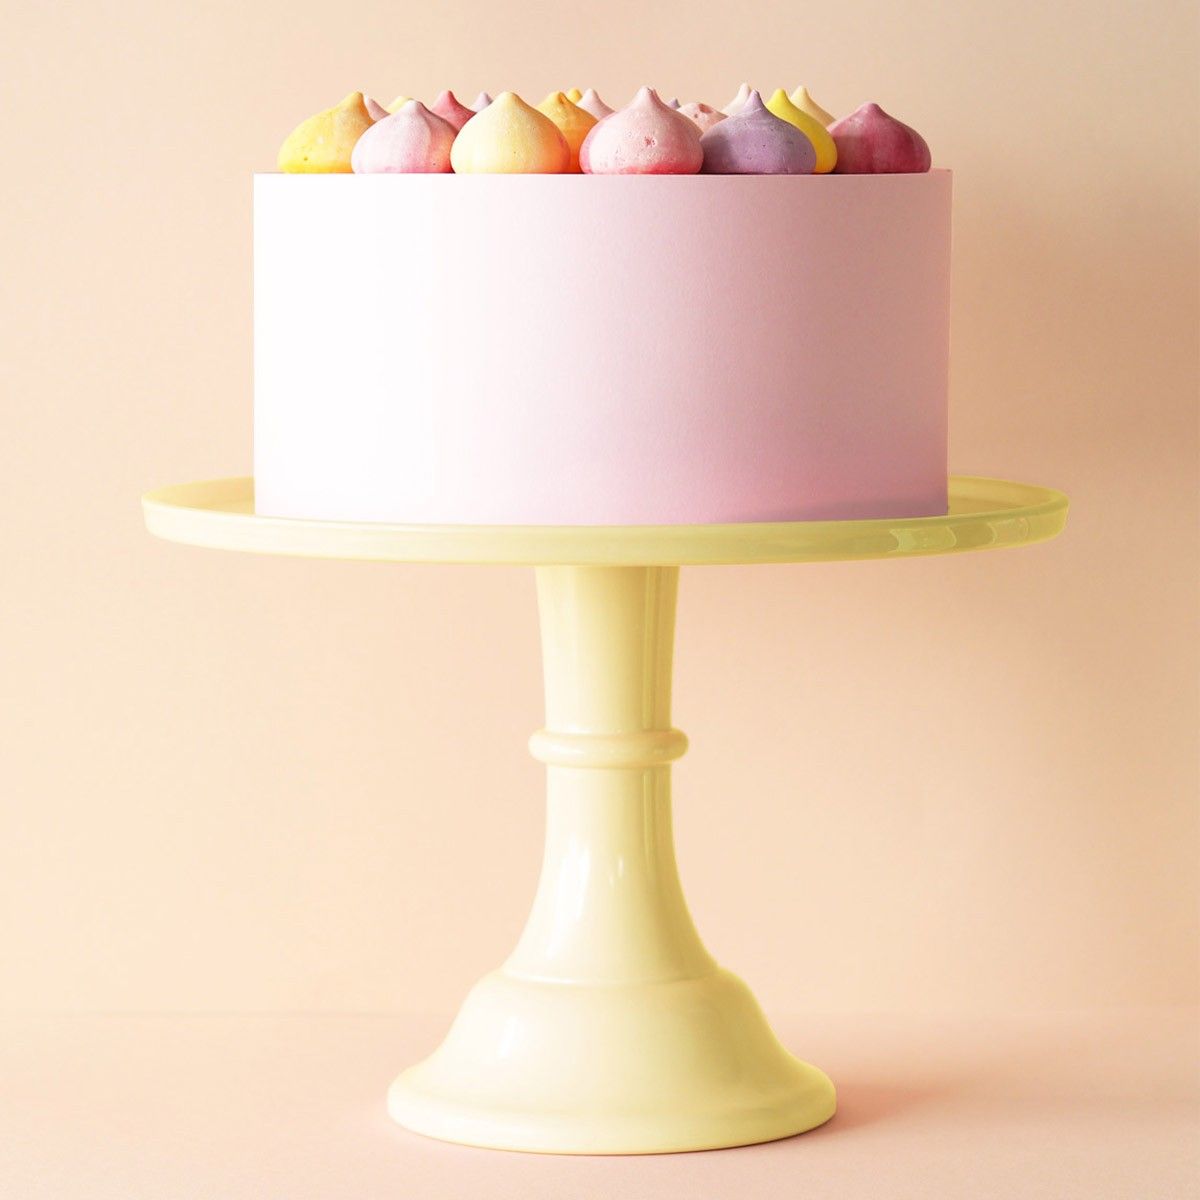 Rosa tårta som presenteras på ett gult tårtfat gjort i melamin med en storlek på 30 cm